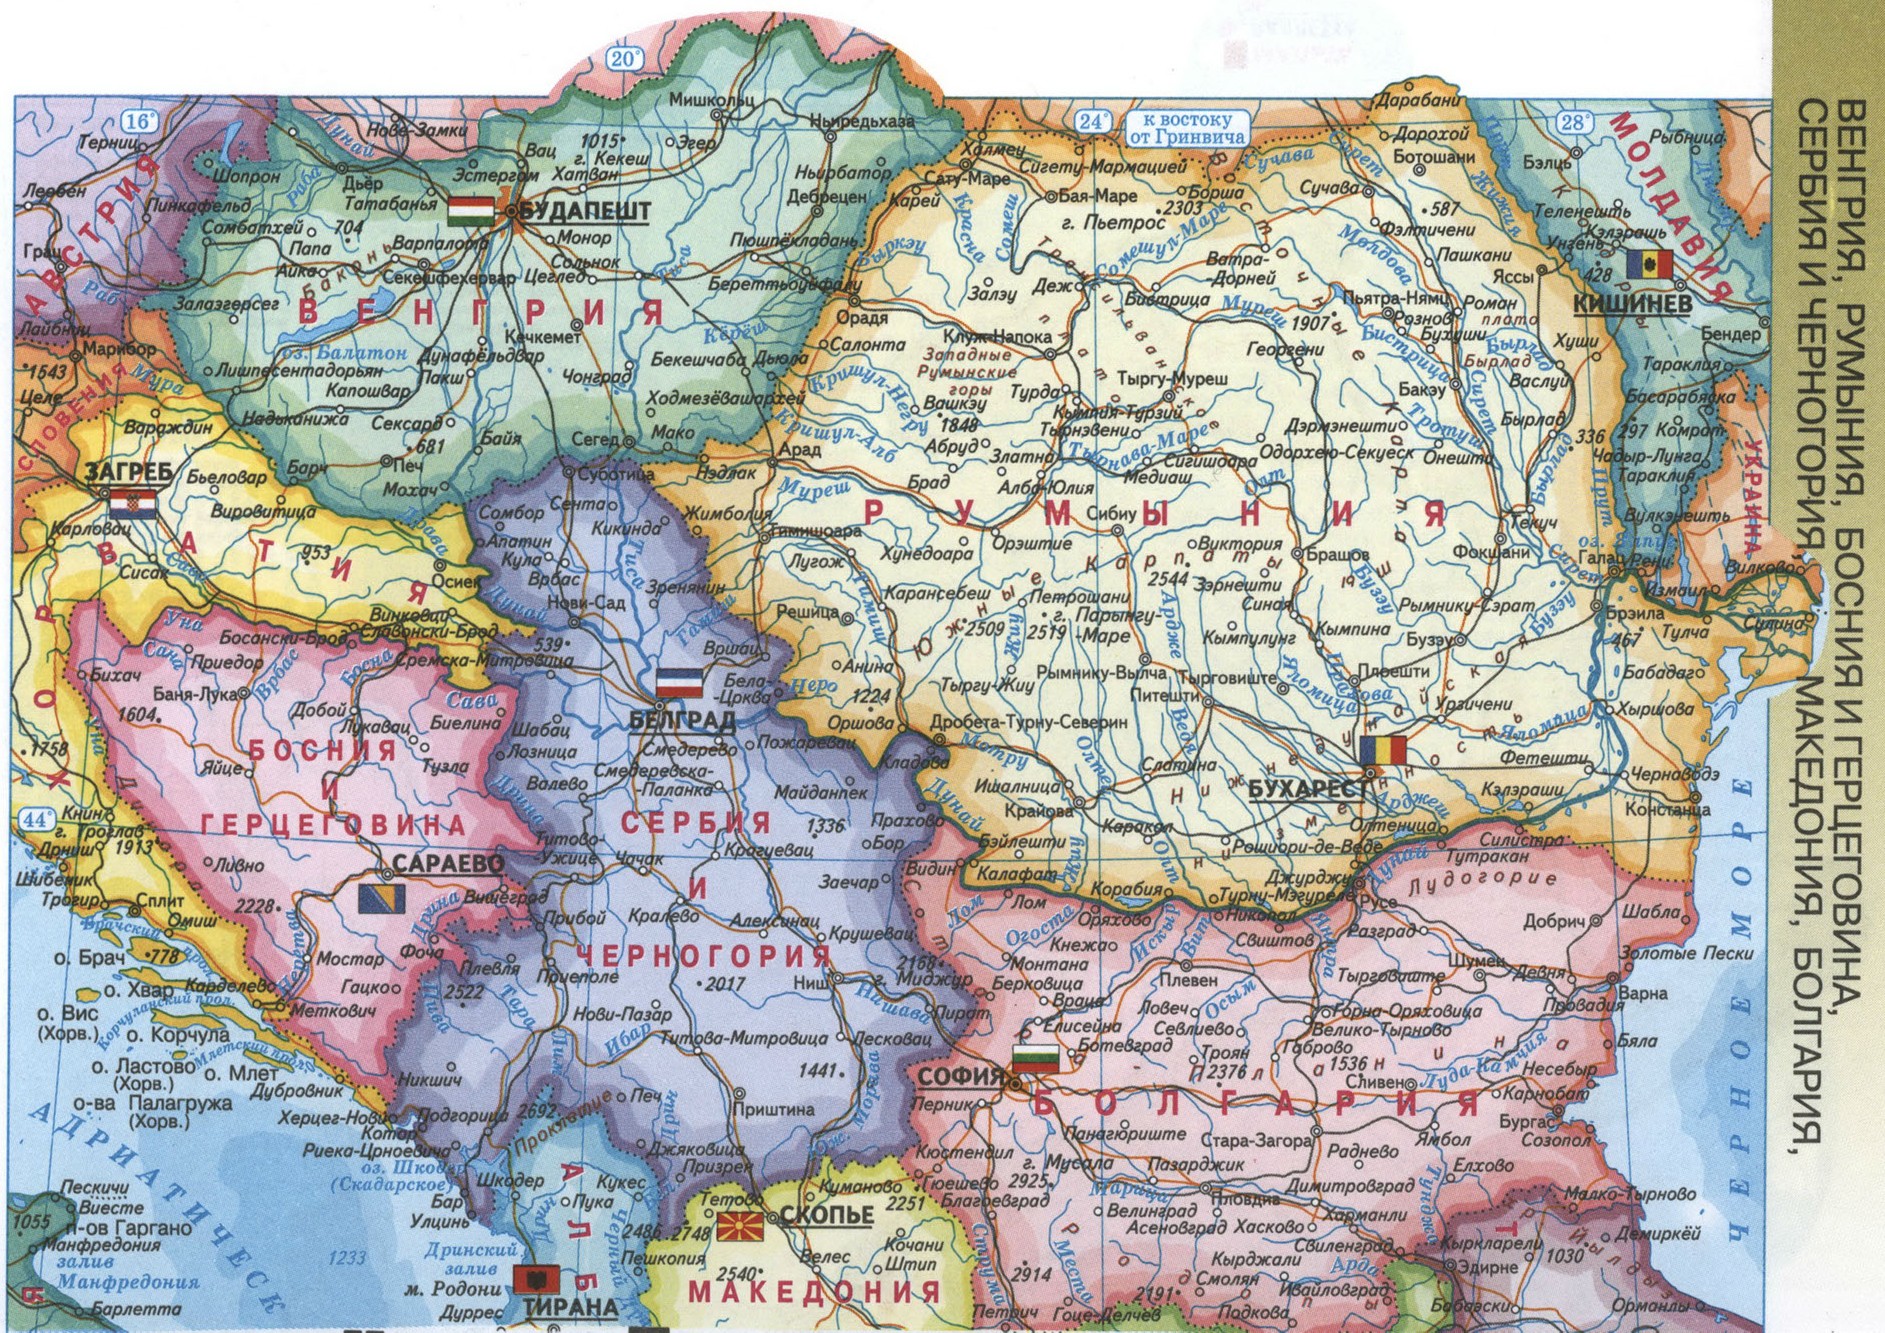 Подробная карта востока. Венгрия на карте Восточной Европы. Политическая карта Юго-Восточной Европы. Подробная карта Восточной Европы.